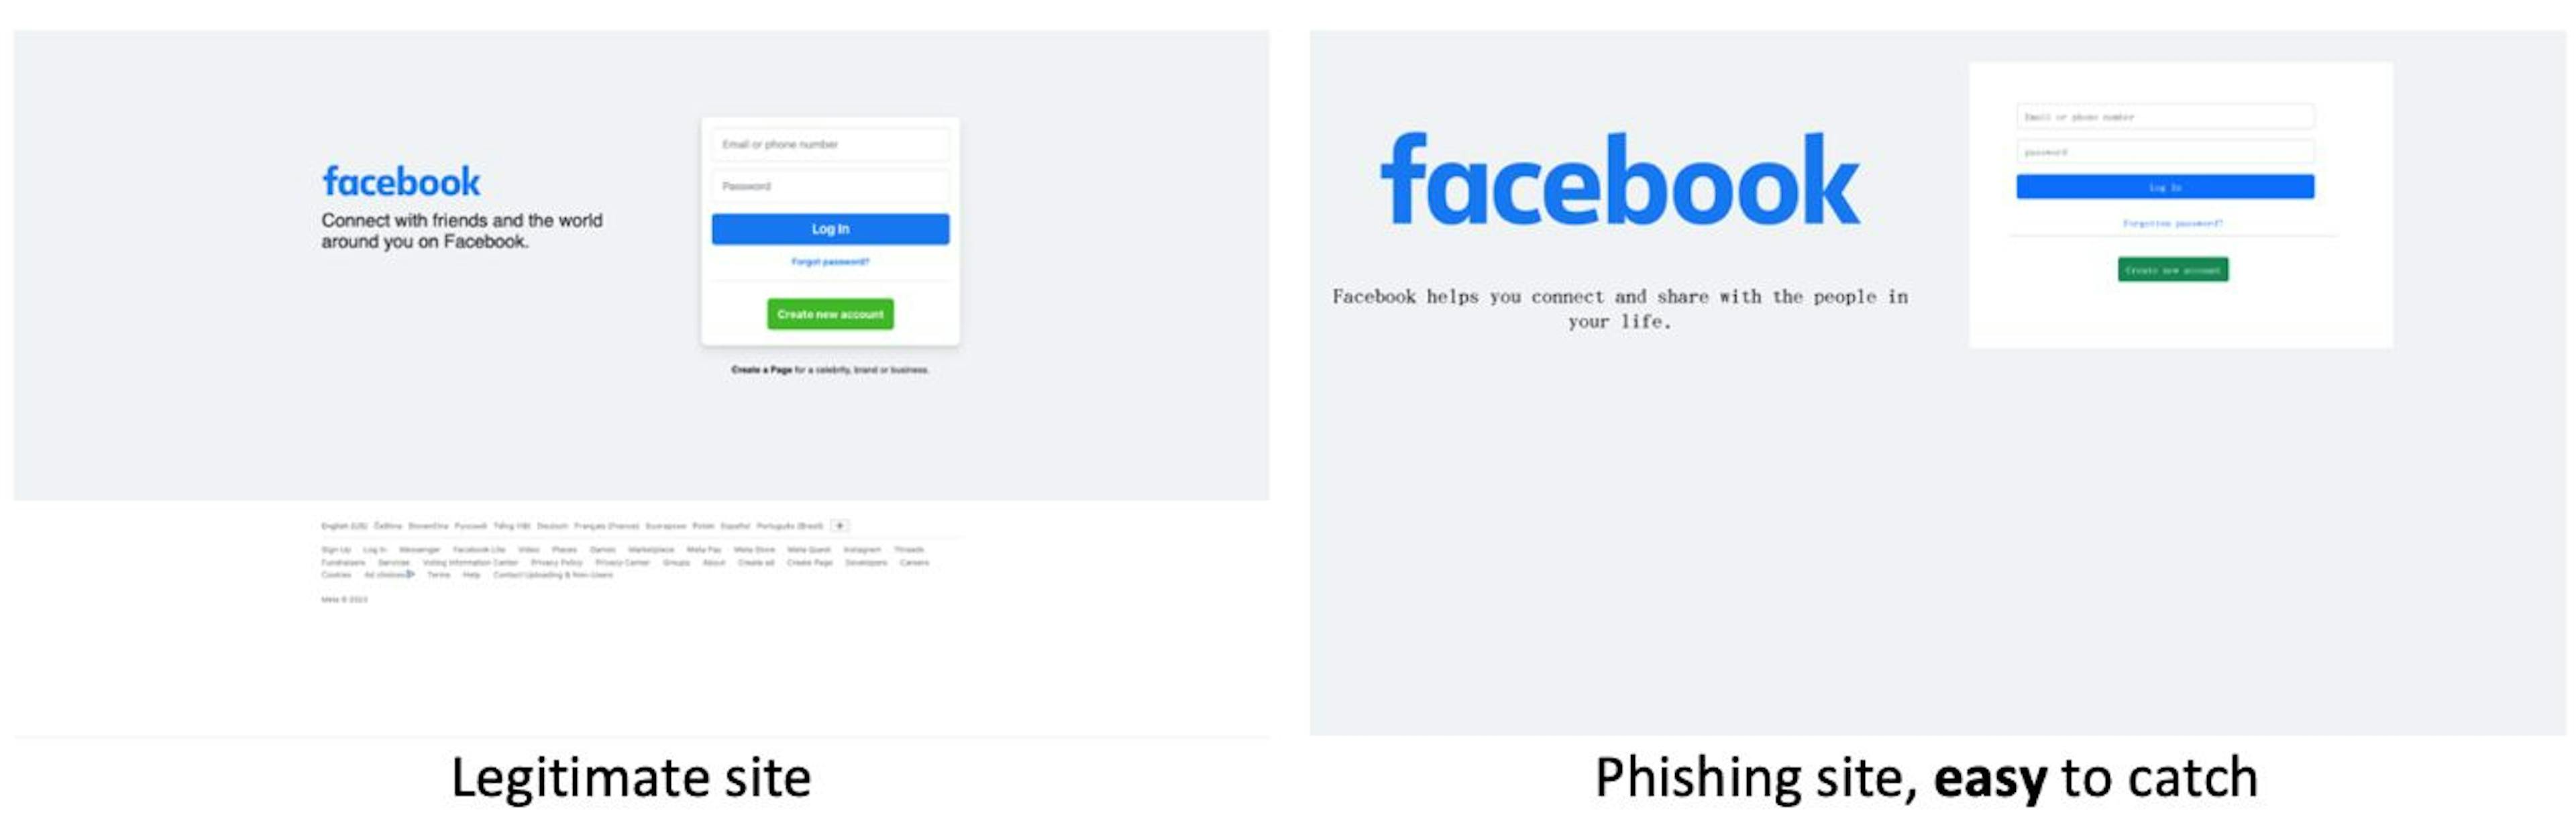 Sitio legítimo versus sitio de phishing